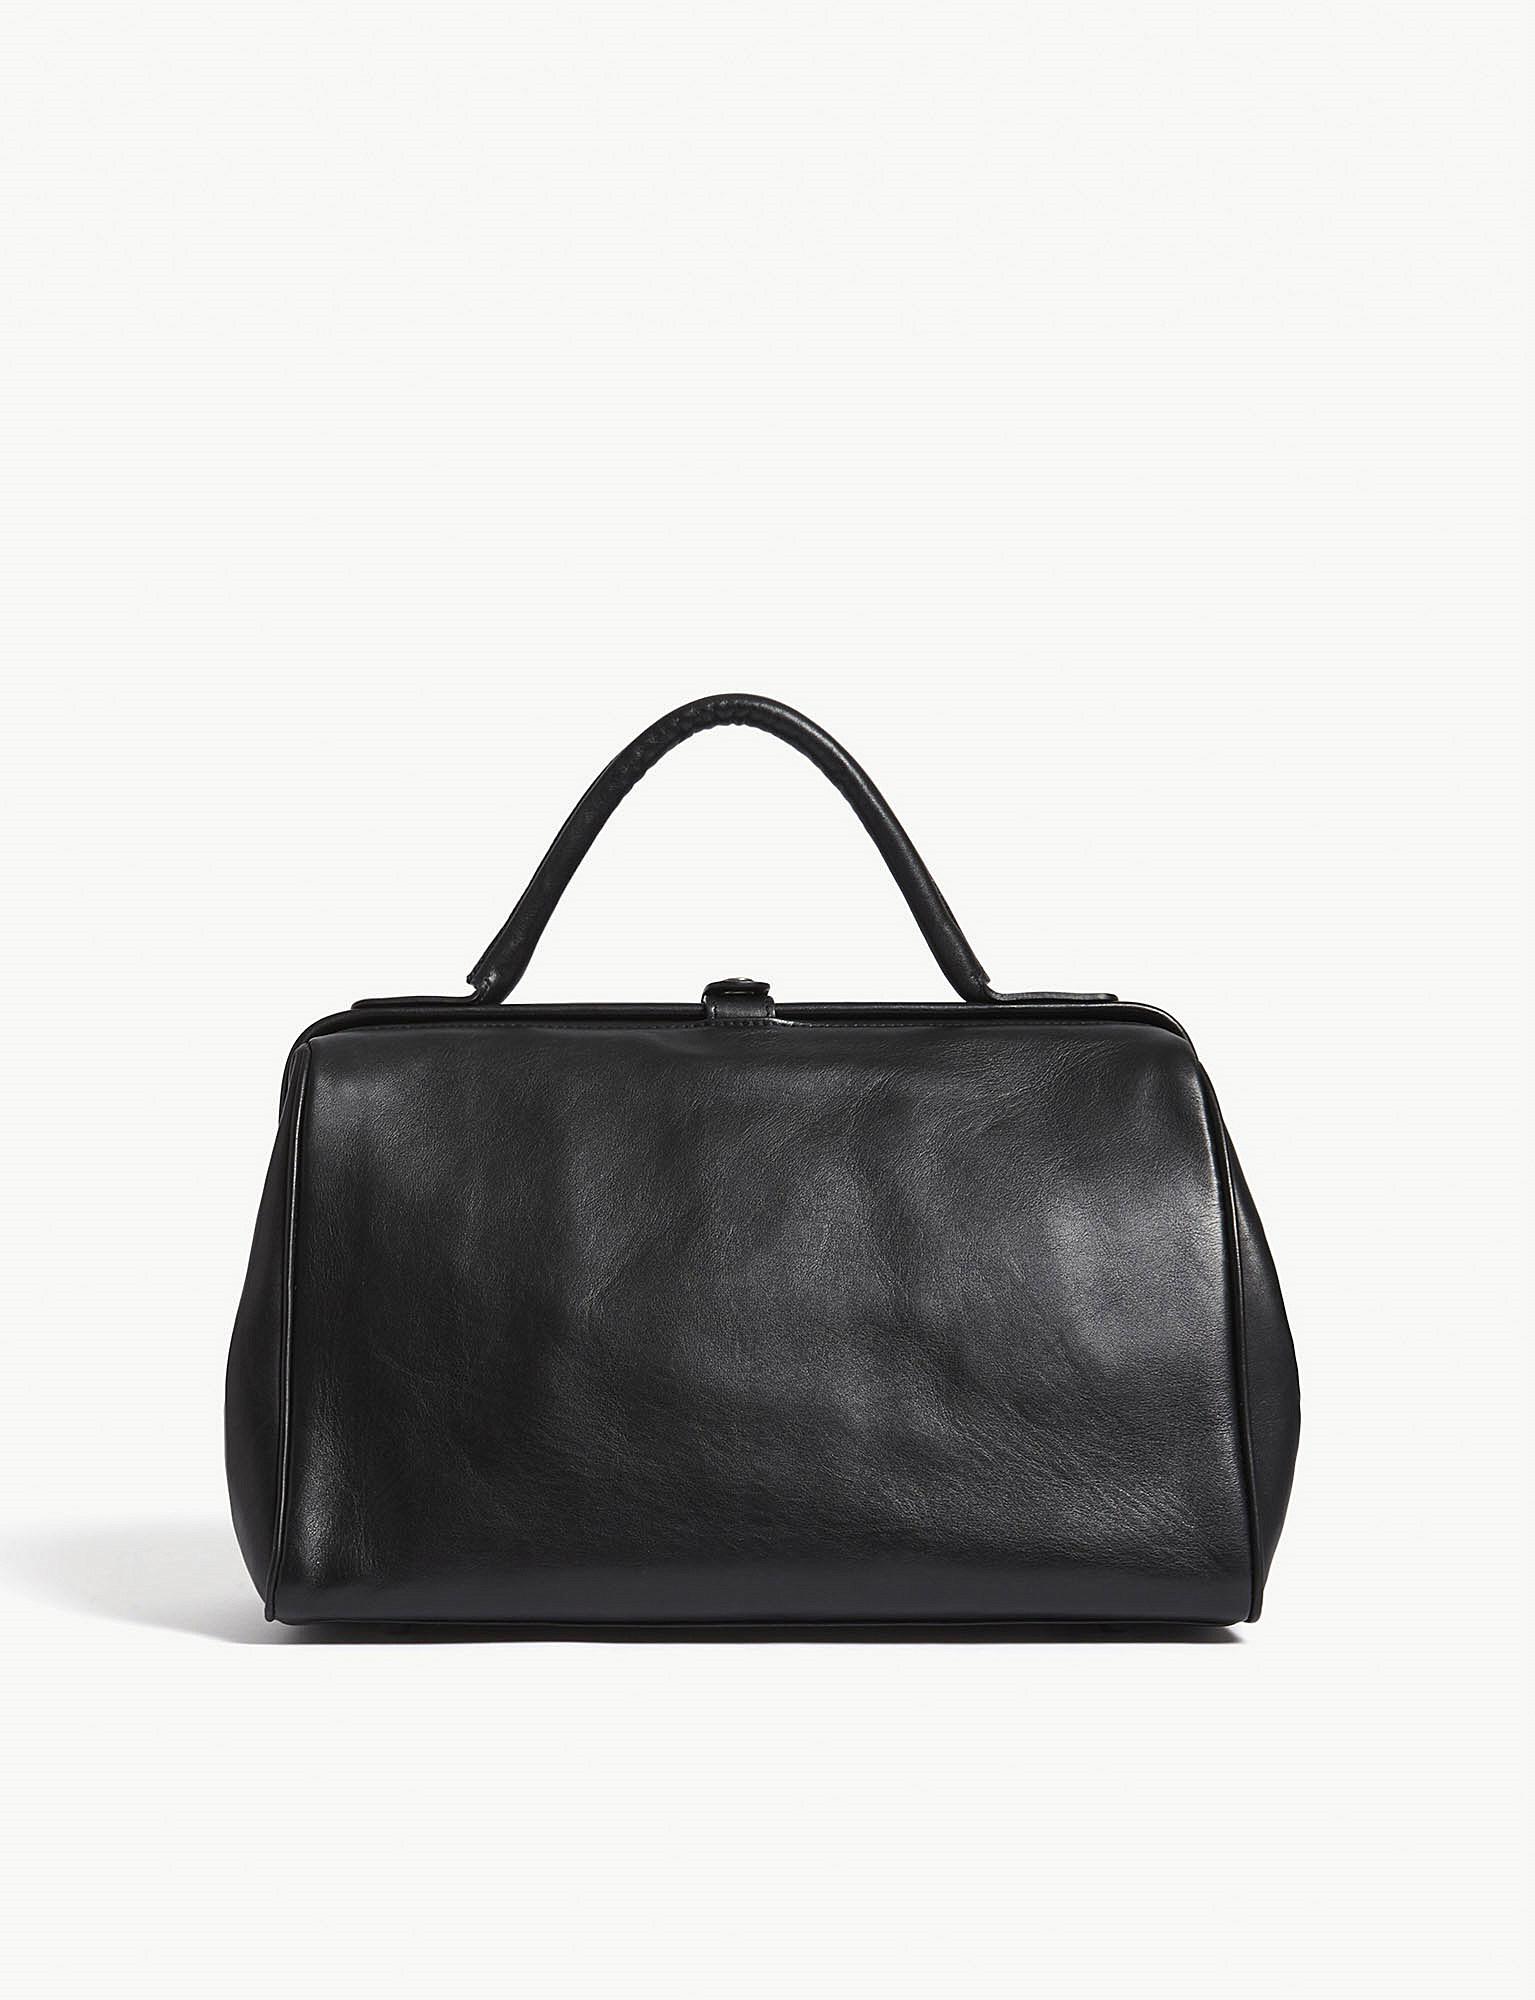 A.F.Vandevorst Leather Doctor Bag in Black | Lyst